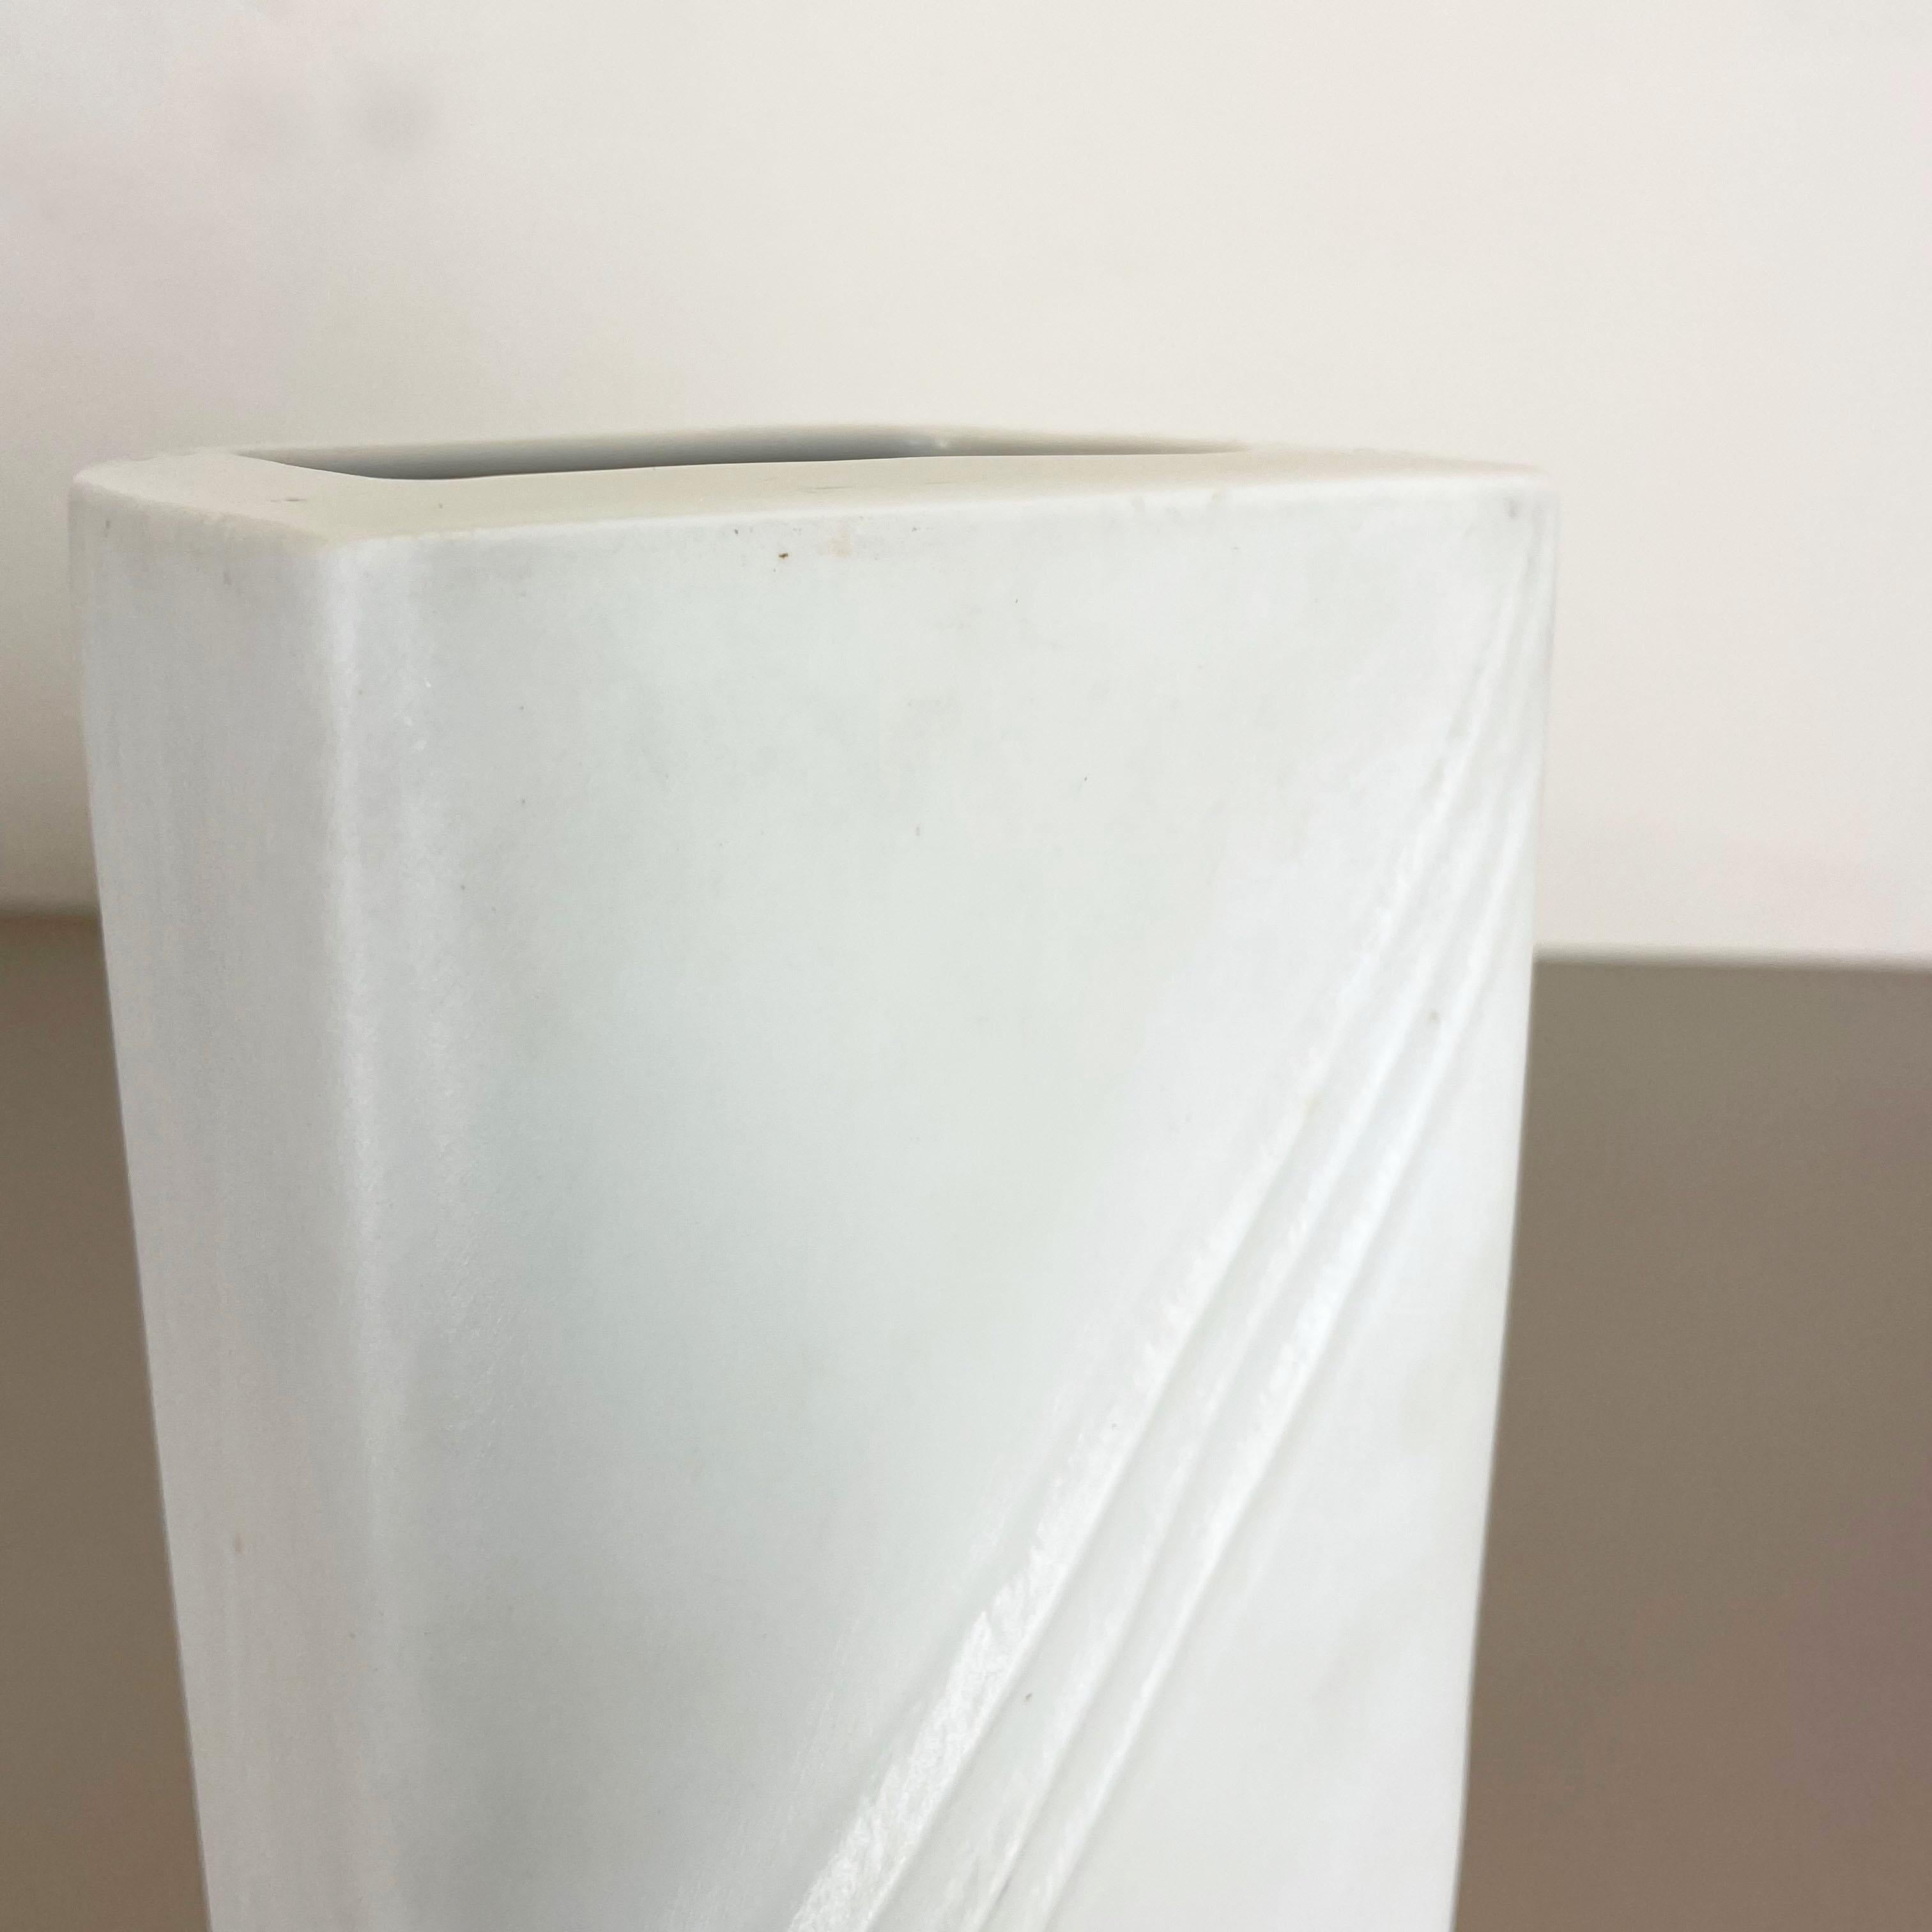 Large OP Art Vase Porcelain German Vase by Martin Freyer for Rosenthal 1970s No2 For Sale 2